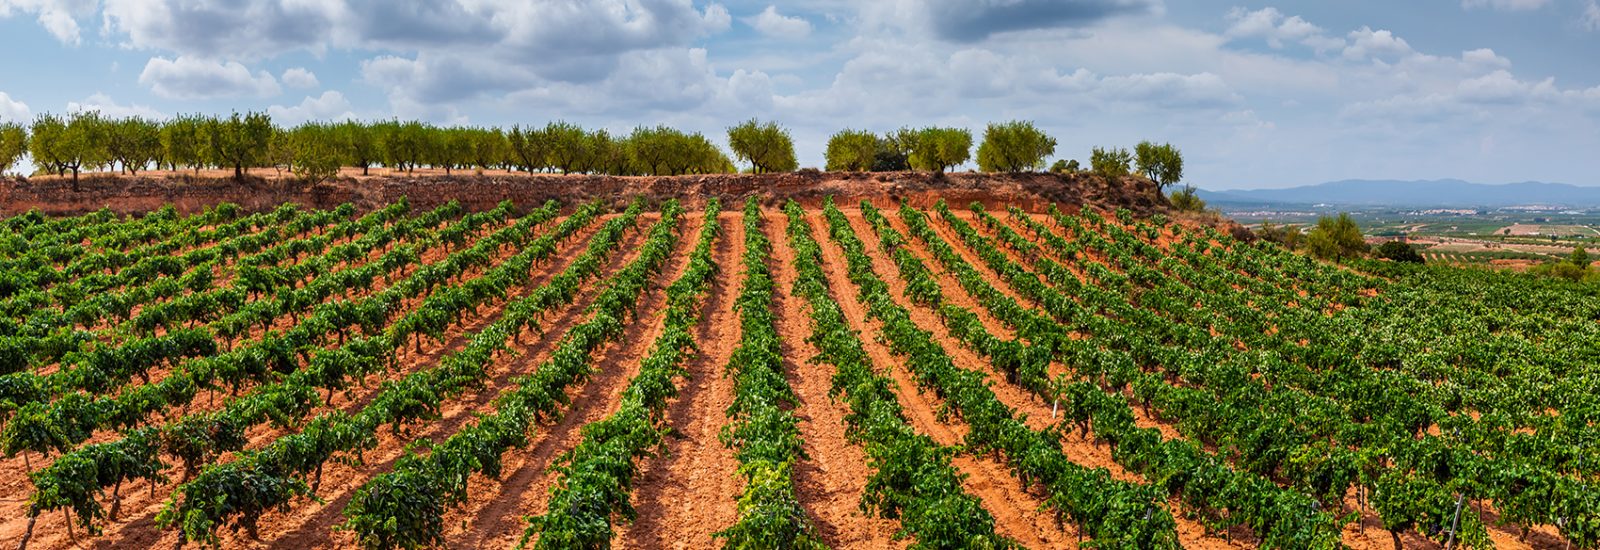 La Rioja vineyard